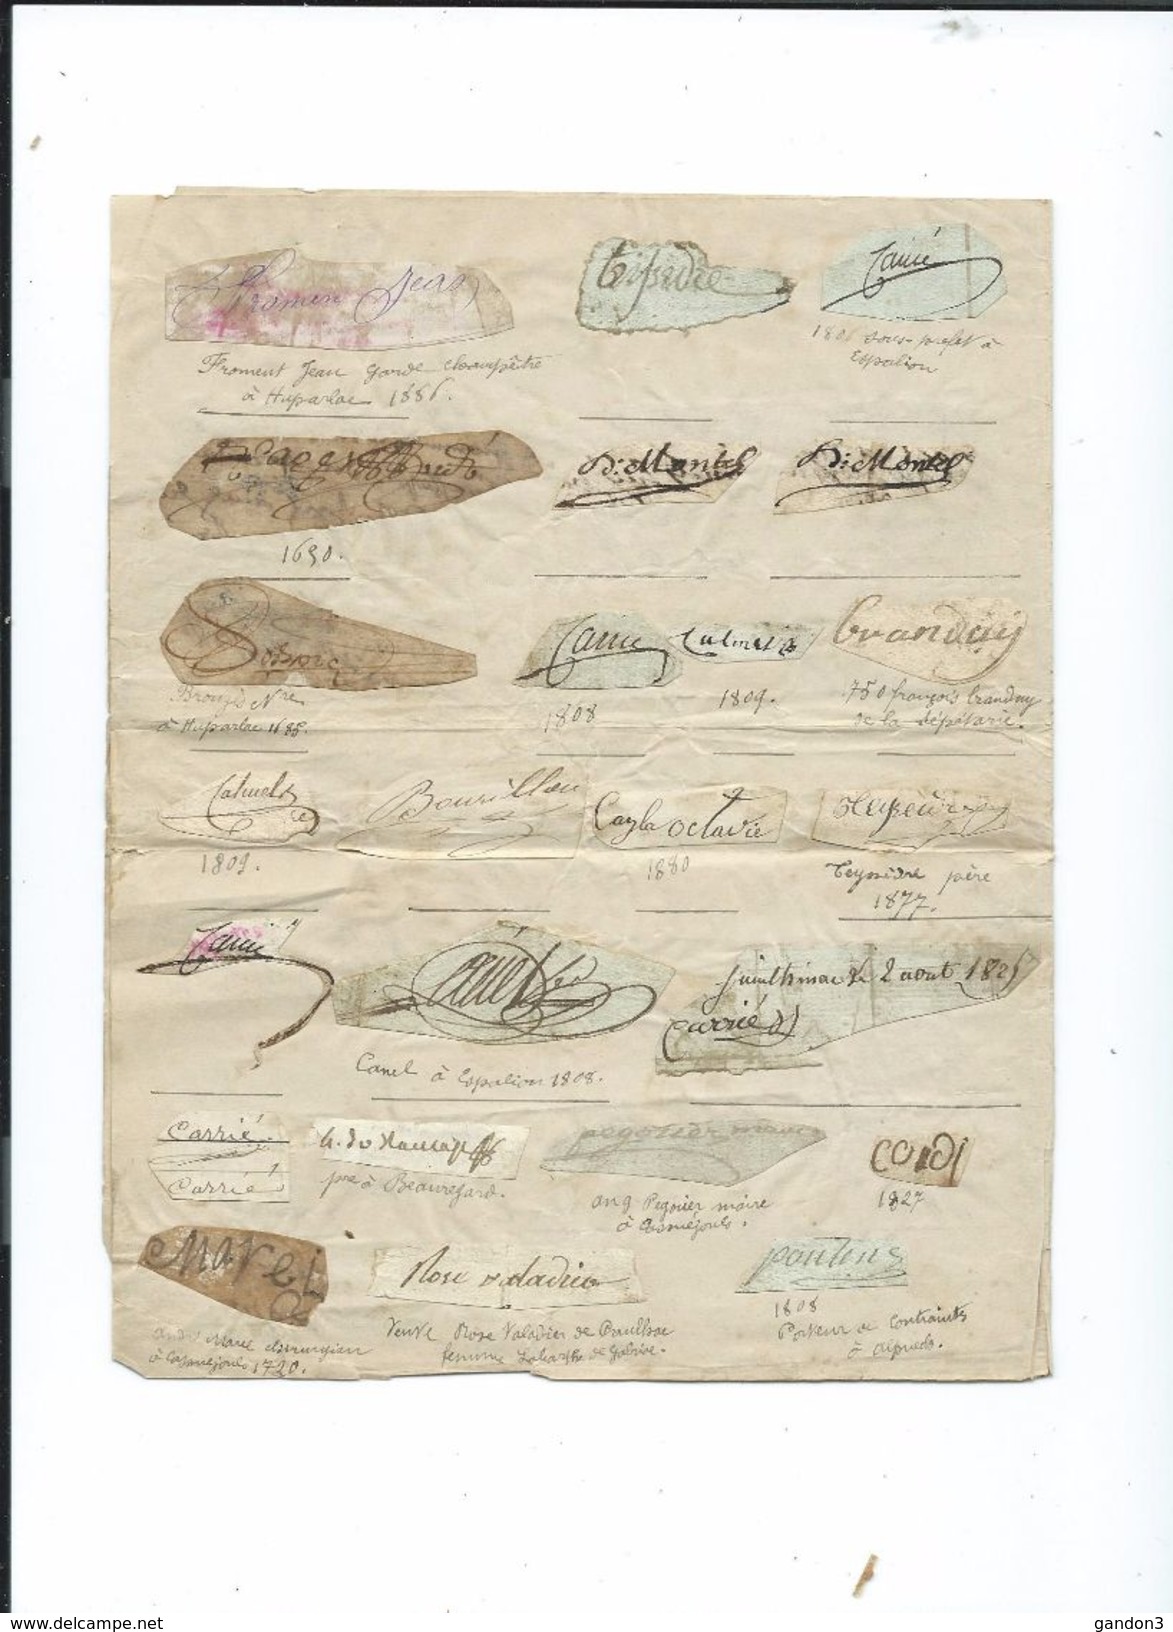 Petit   ALBUM   d' Autographes  des Années  1600  à  1800 et plus - principalement département de l' AVEYRON -